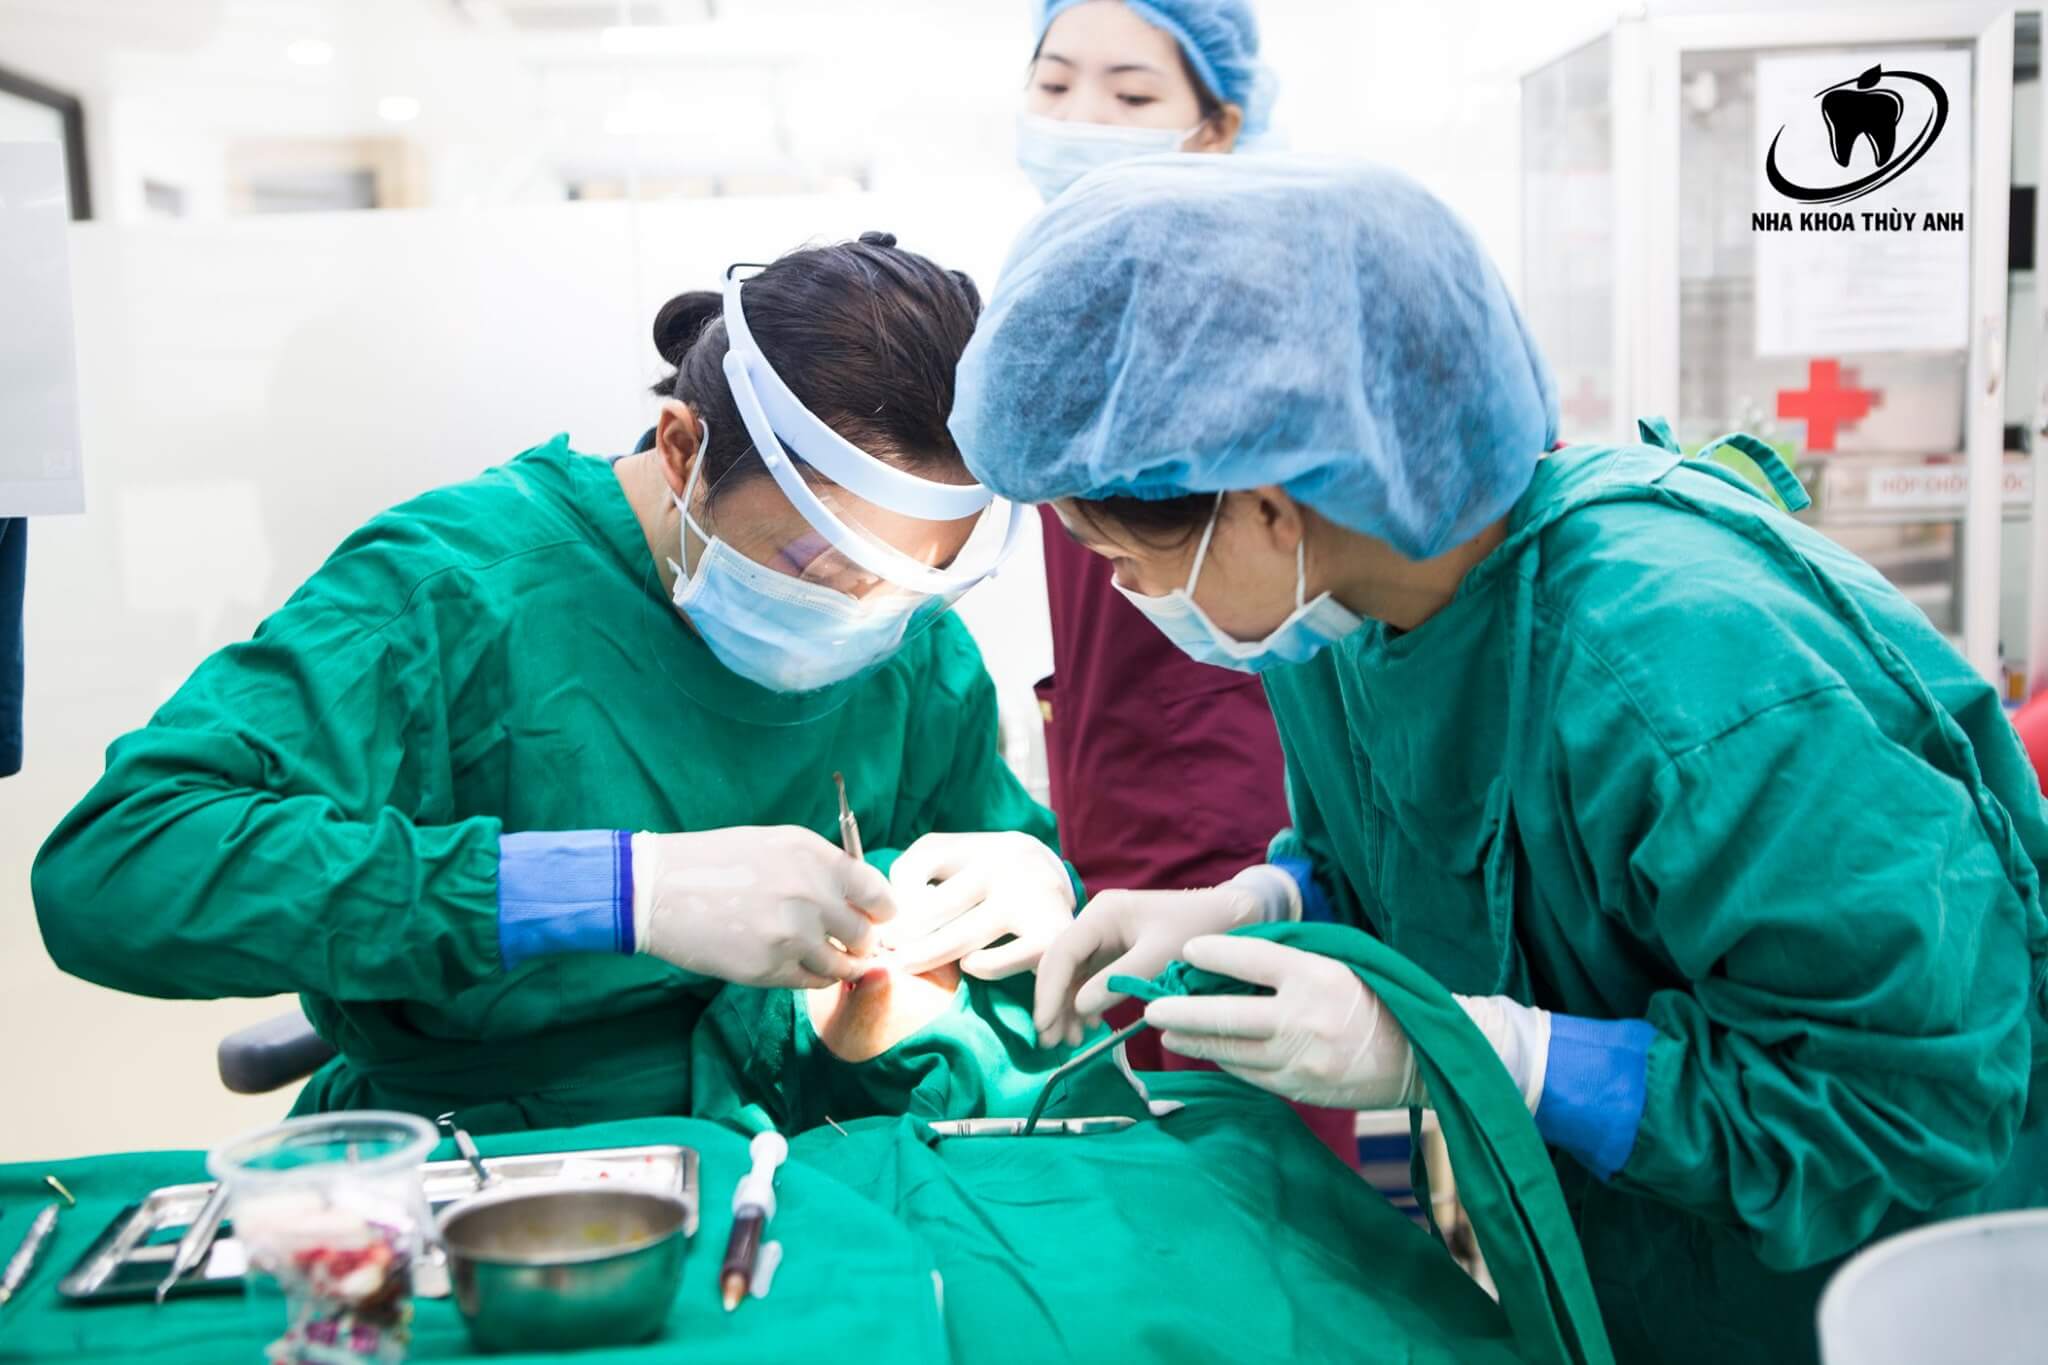 Phẫu thuật cắt lợi có thể xảy ra những biến chứng nào? Nha khoa Thùy Anh